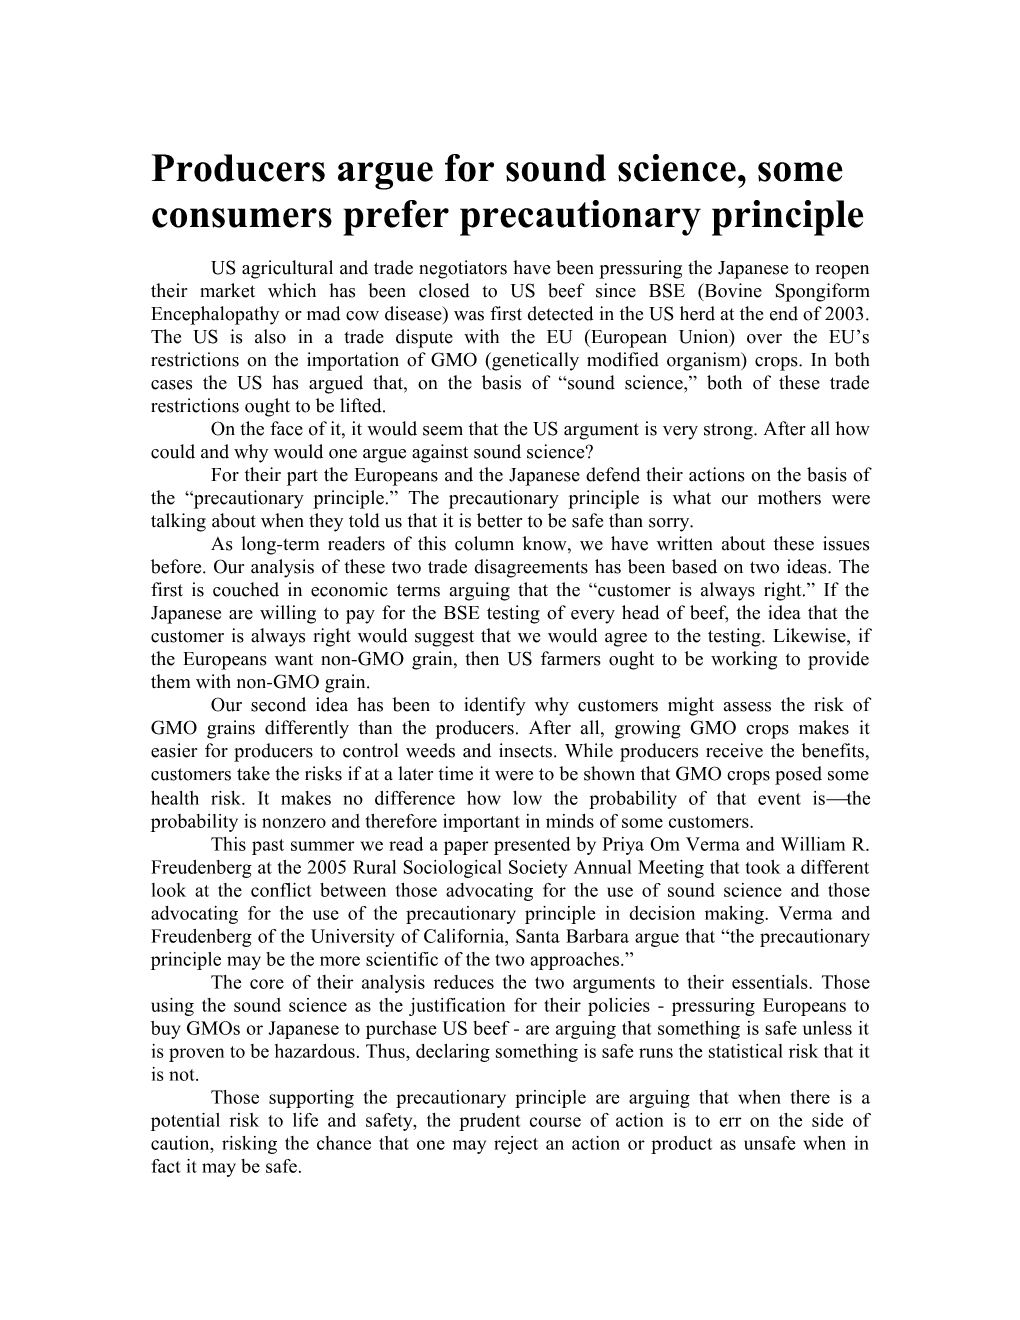 Producers Argue for Sound Science, Some Consumers Prefer Precautionary Principle